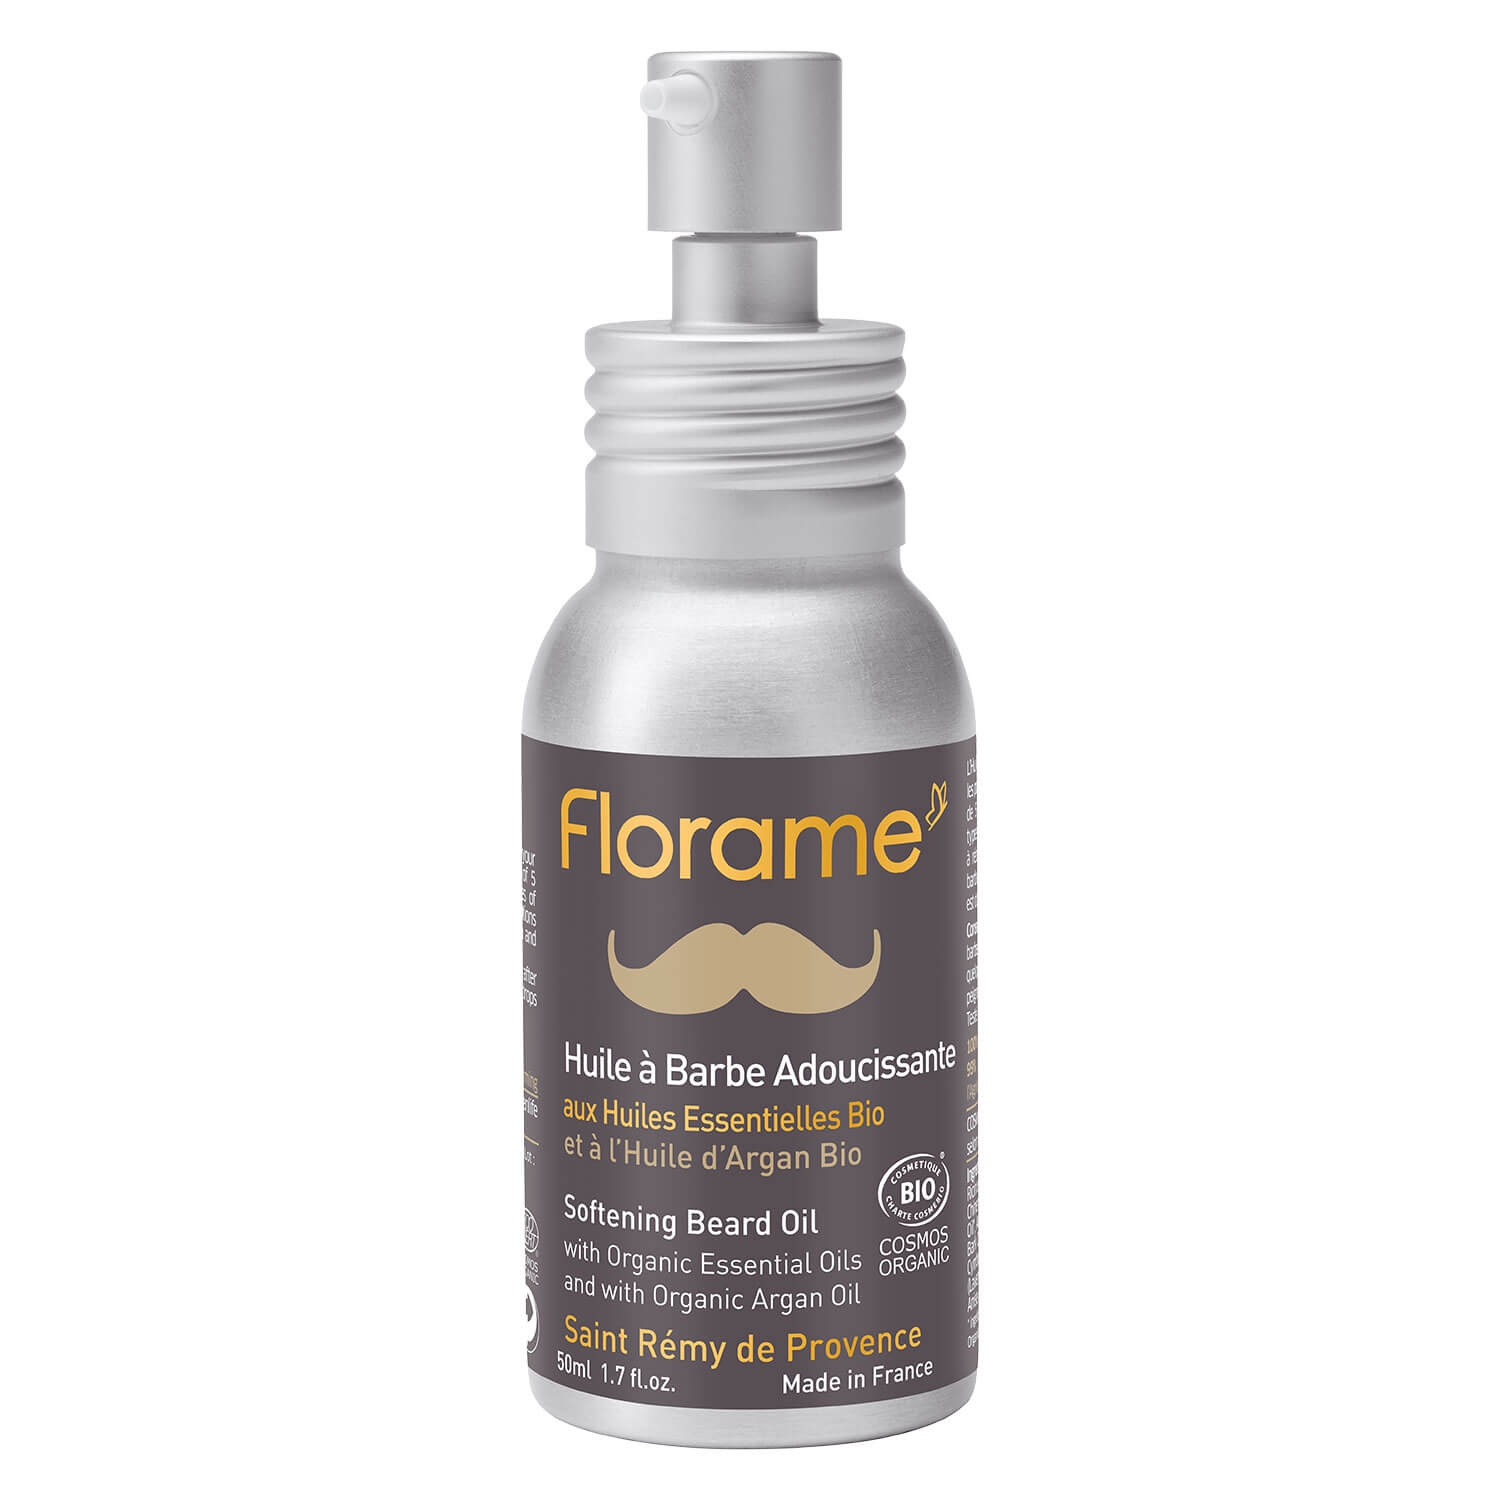 Produktbild von Florame Homme - Softening Beard Oil